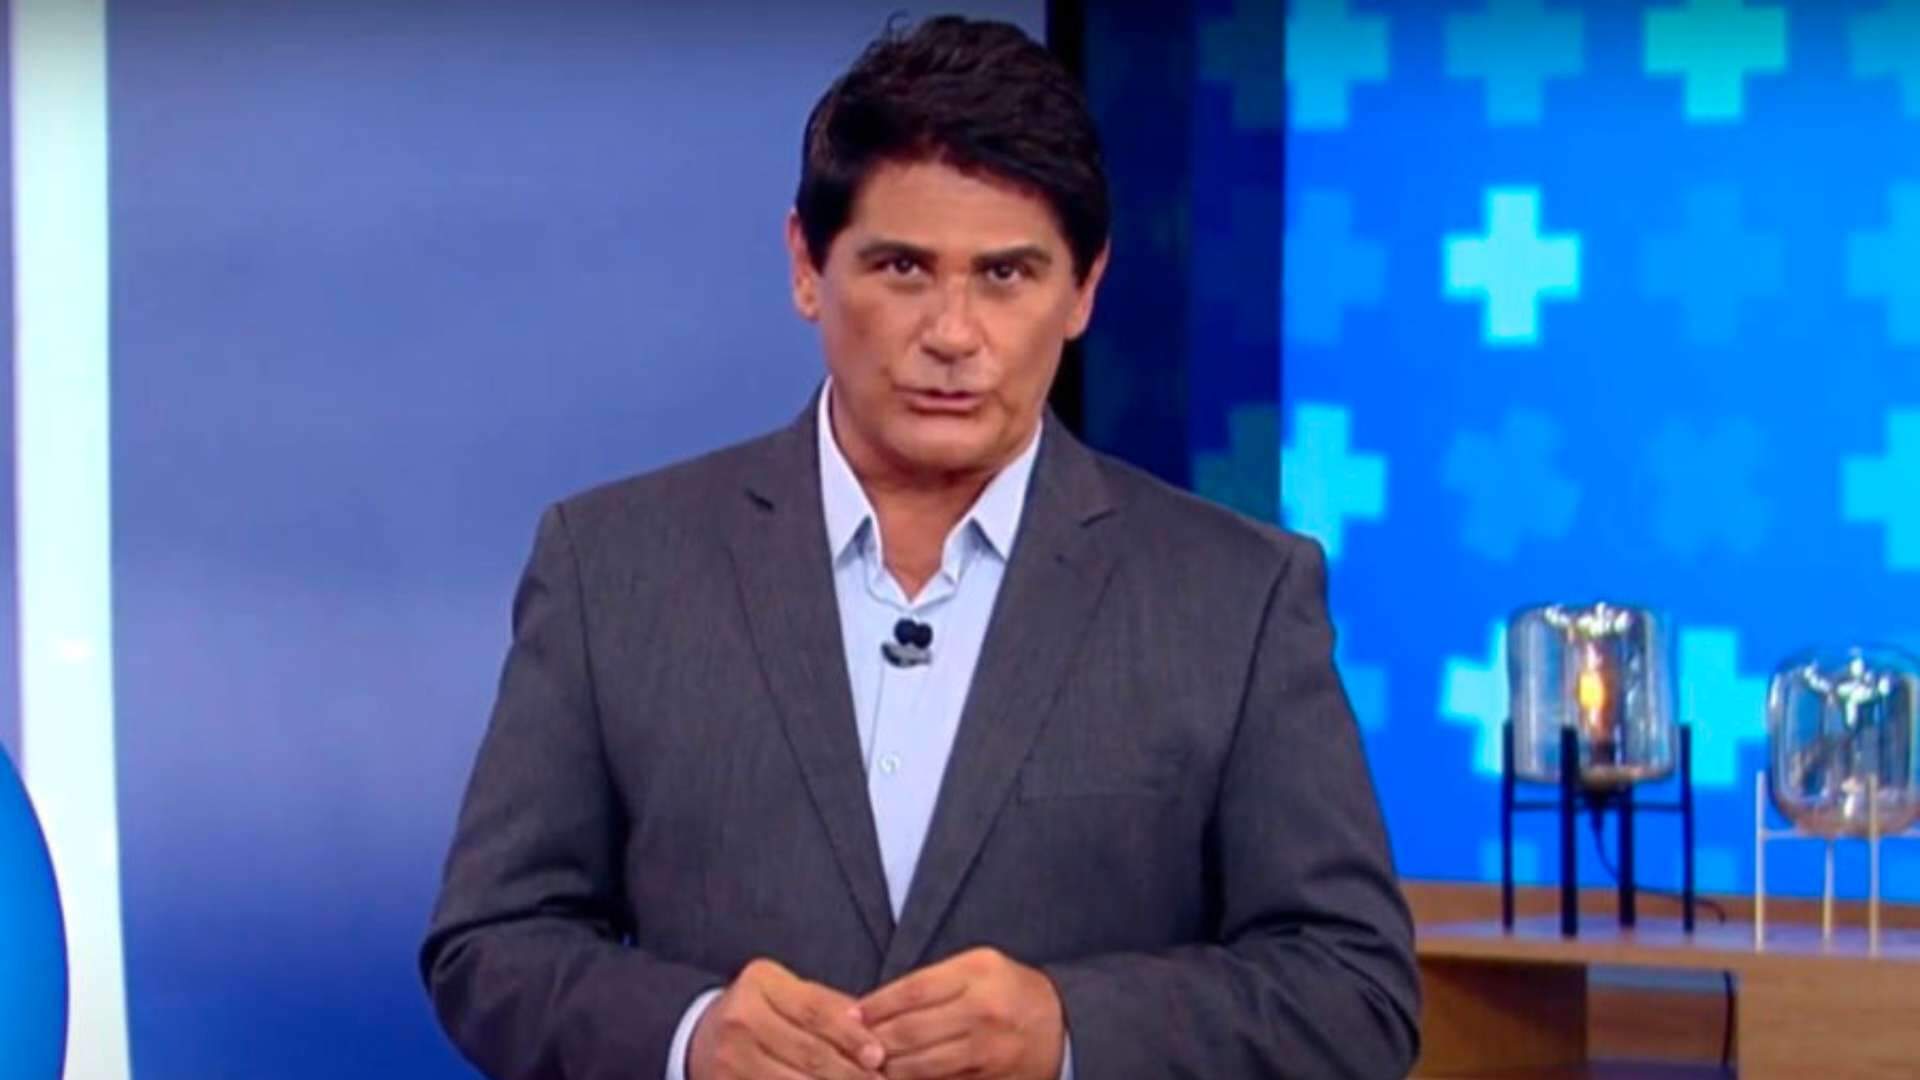 Ao vivo no ‘Hoje em Dia’, César Filho fica chocado ao noticiar prisão de famoso da Globo: “Não é possível” - Metropolitana FM